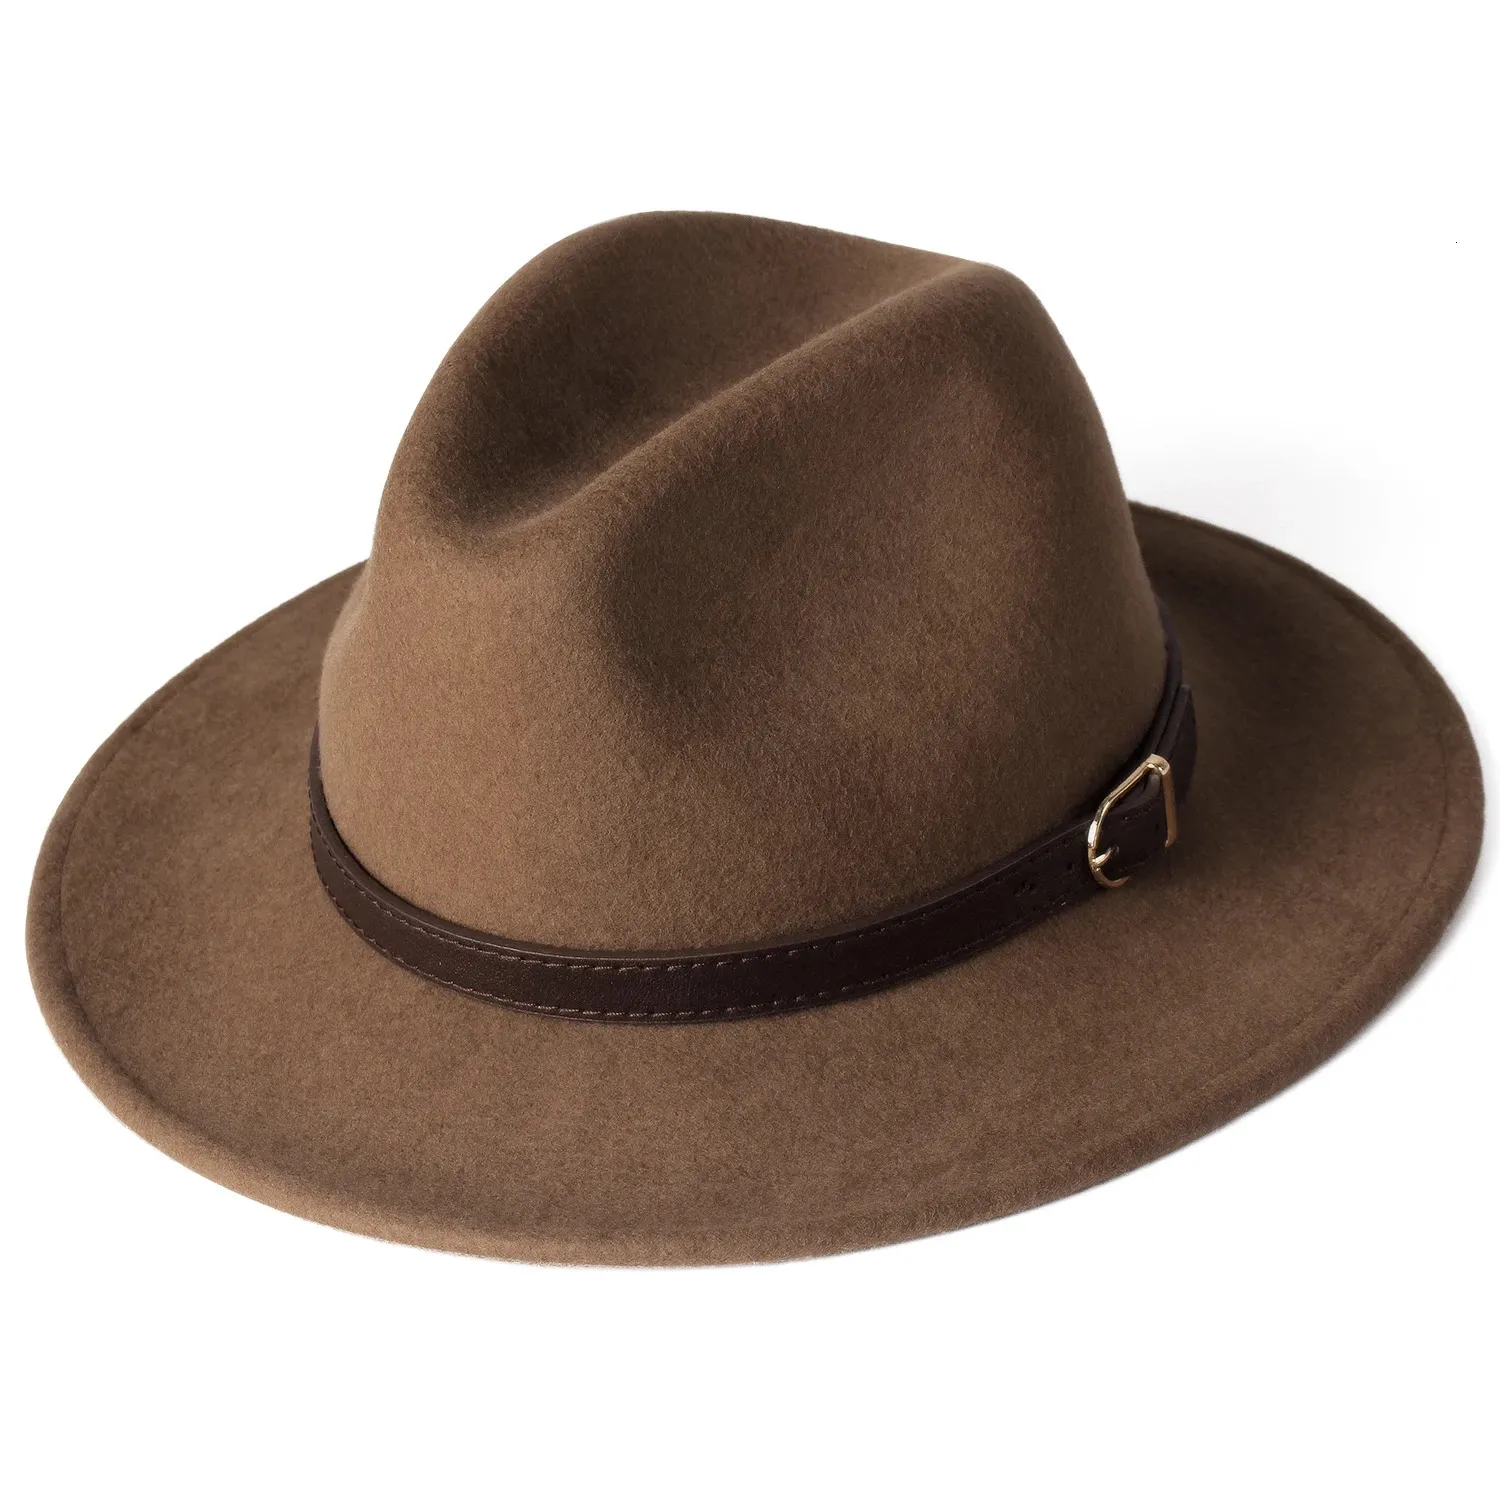 FURTALK 100% Australia sombrero Fedora de lana mujeres hombres sombrero señoras sombreros de ala ancha Jazz sombrero de fieltro Vintage cubo Panamá gorra de invierno 231225